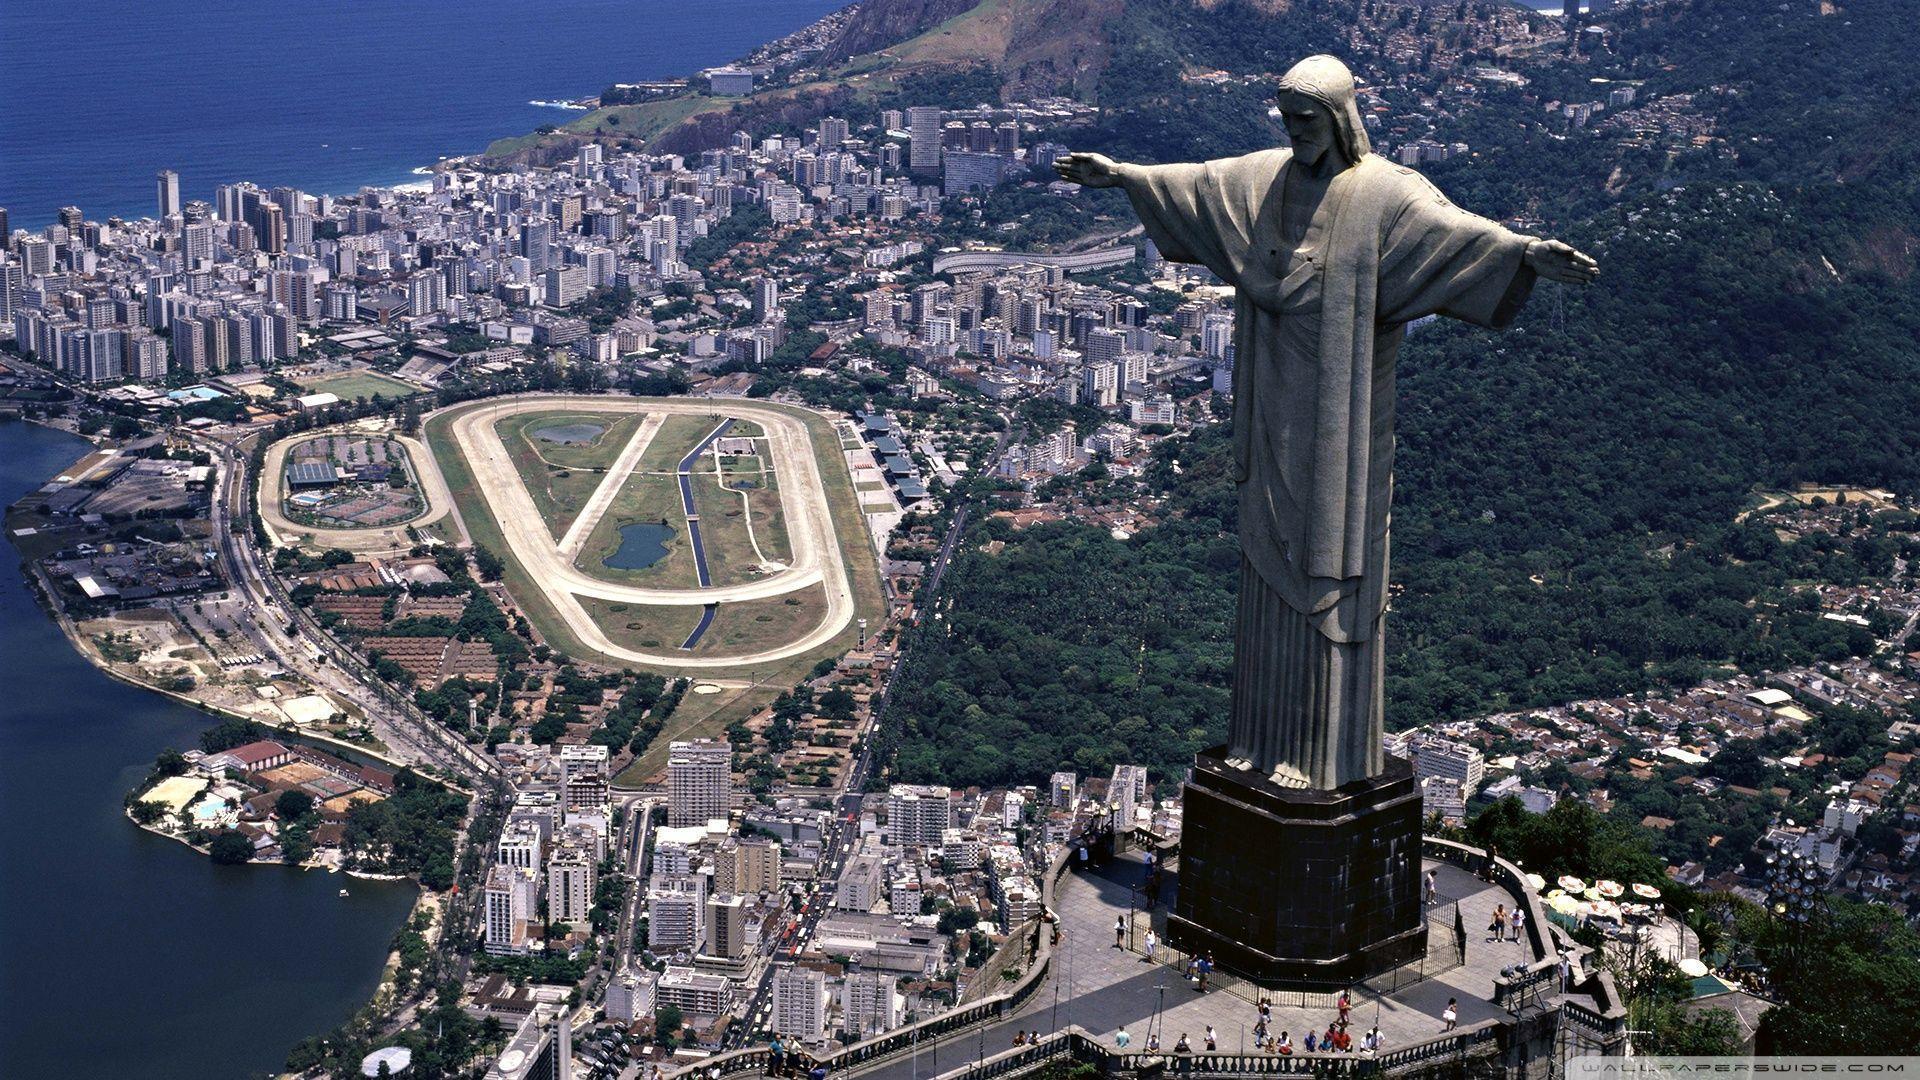 Statue of Christ the Redeemer, Rio de Janeiro, Brazil HD desktop